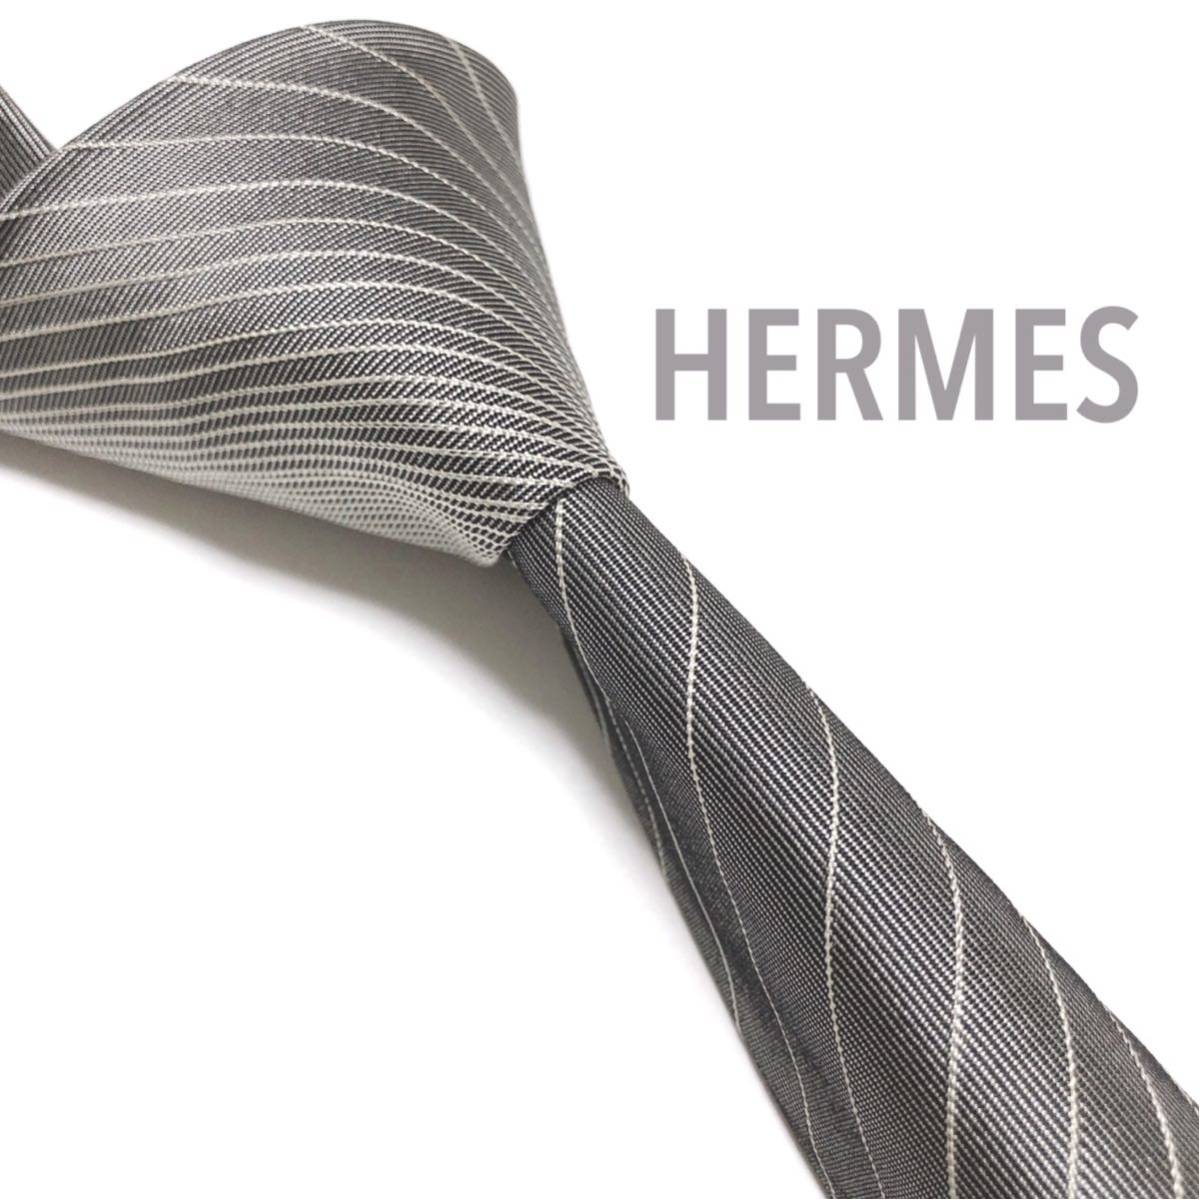 HERMES エルメス 美品 ネクタイ 最高級シルク ストライプ グレー 